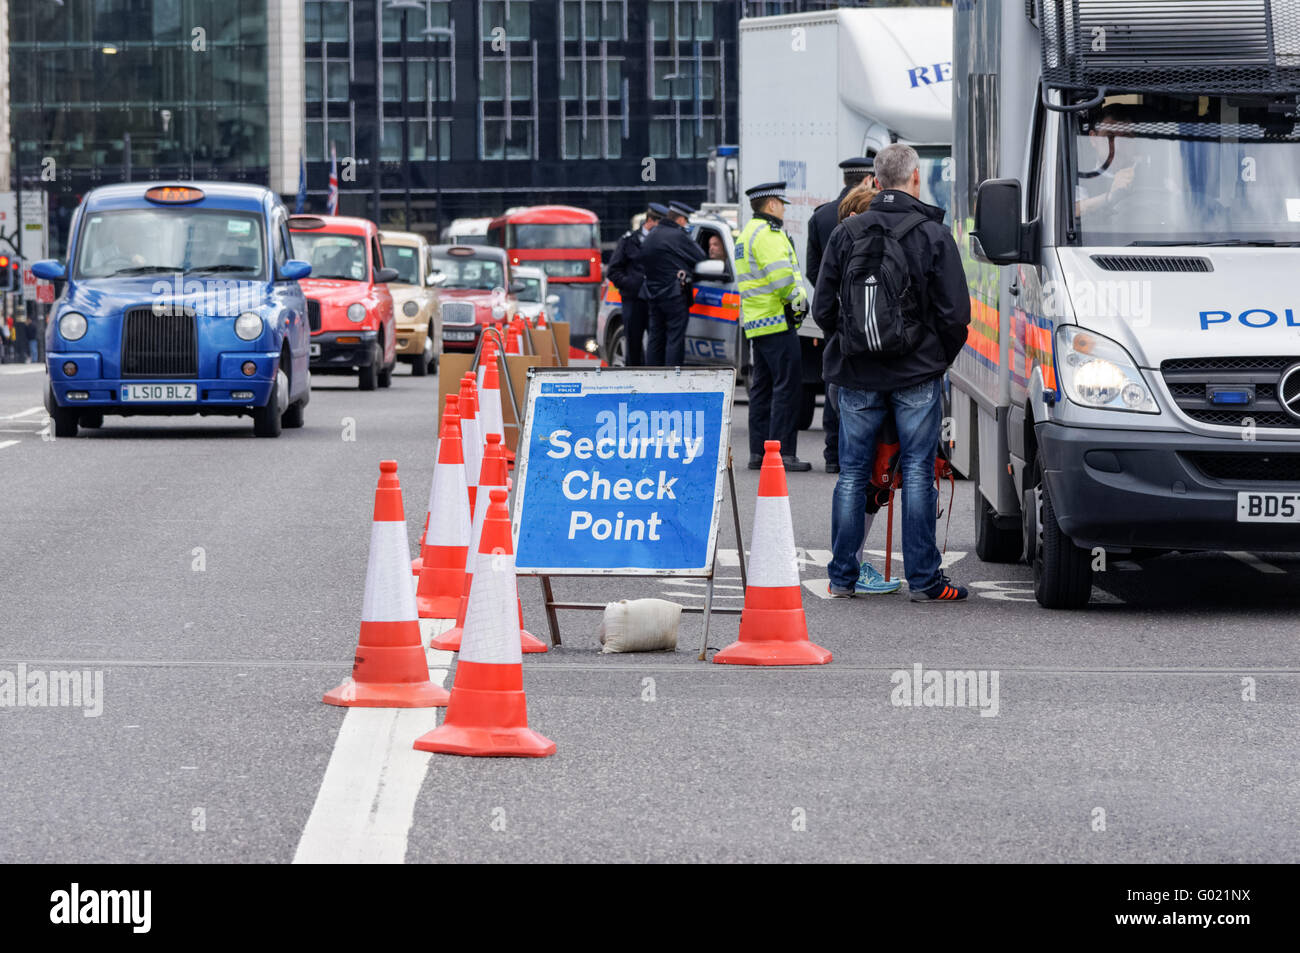 La police au contrôle de sécurité sur le pont de Westminster, Londres Angleterre Royaume-Uni UK Banque D'Images